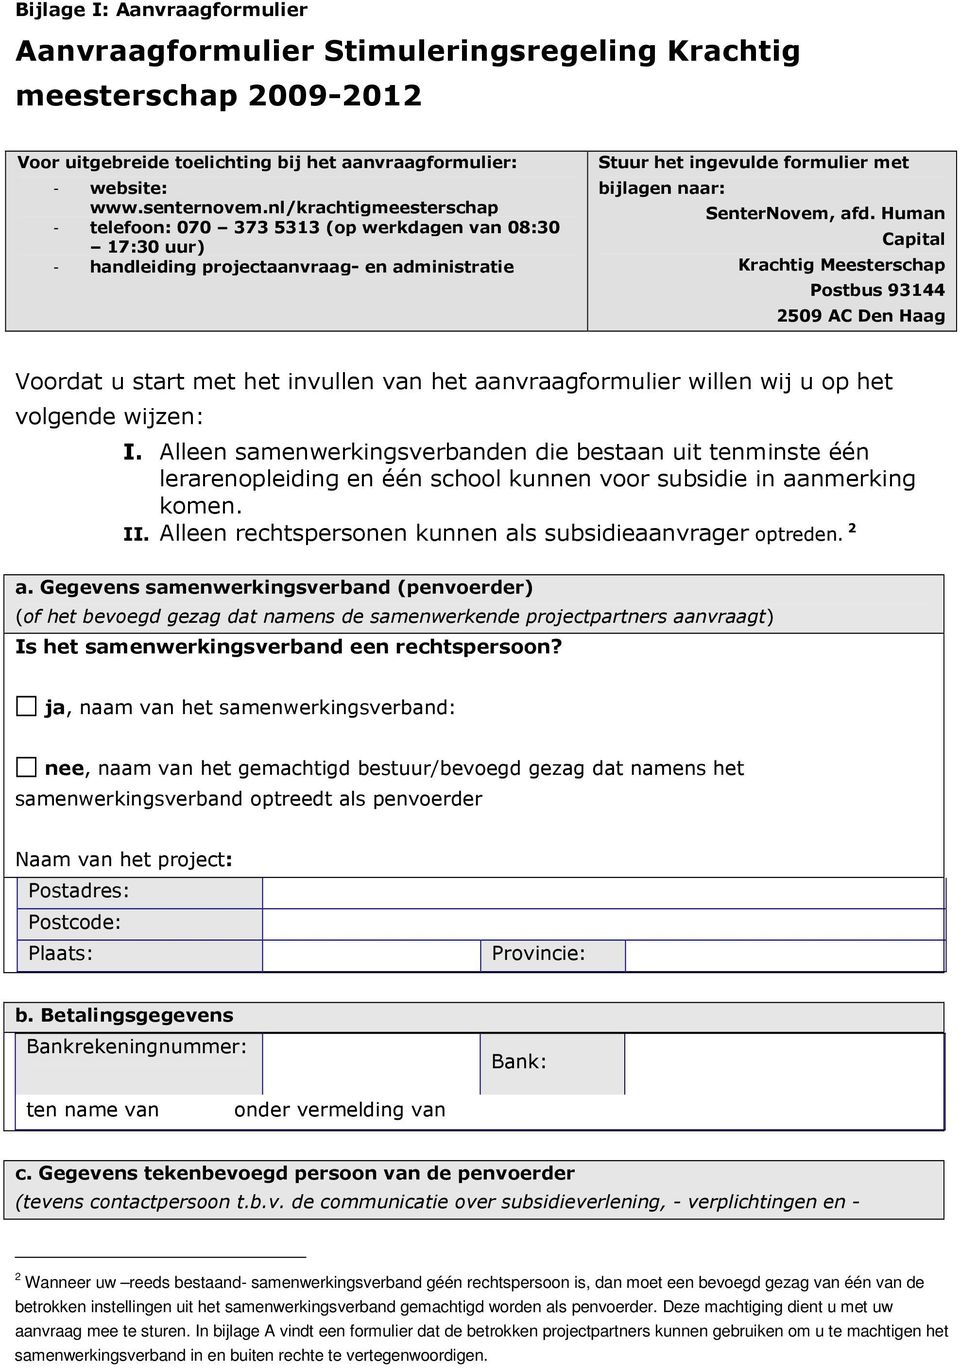 Human Capital Krachtig Meesterschap Postbus 93144 2509 AC Den Haag Voordat u start met het invullen van het aanvraagformulier willen wij u op het volgende wijzen: I.